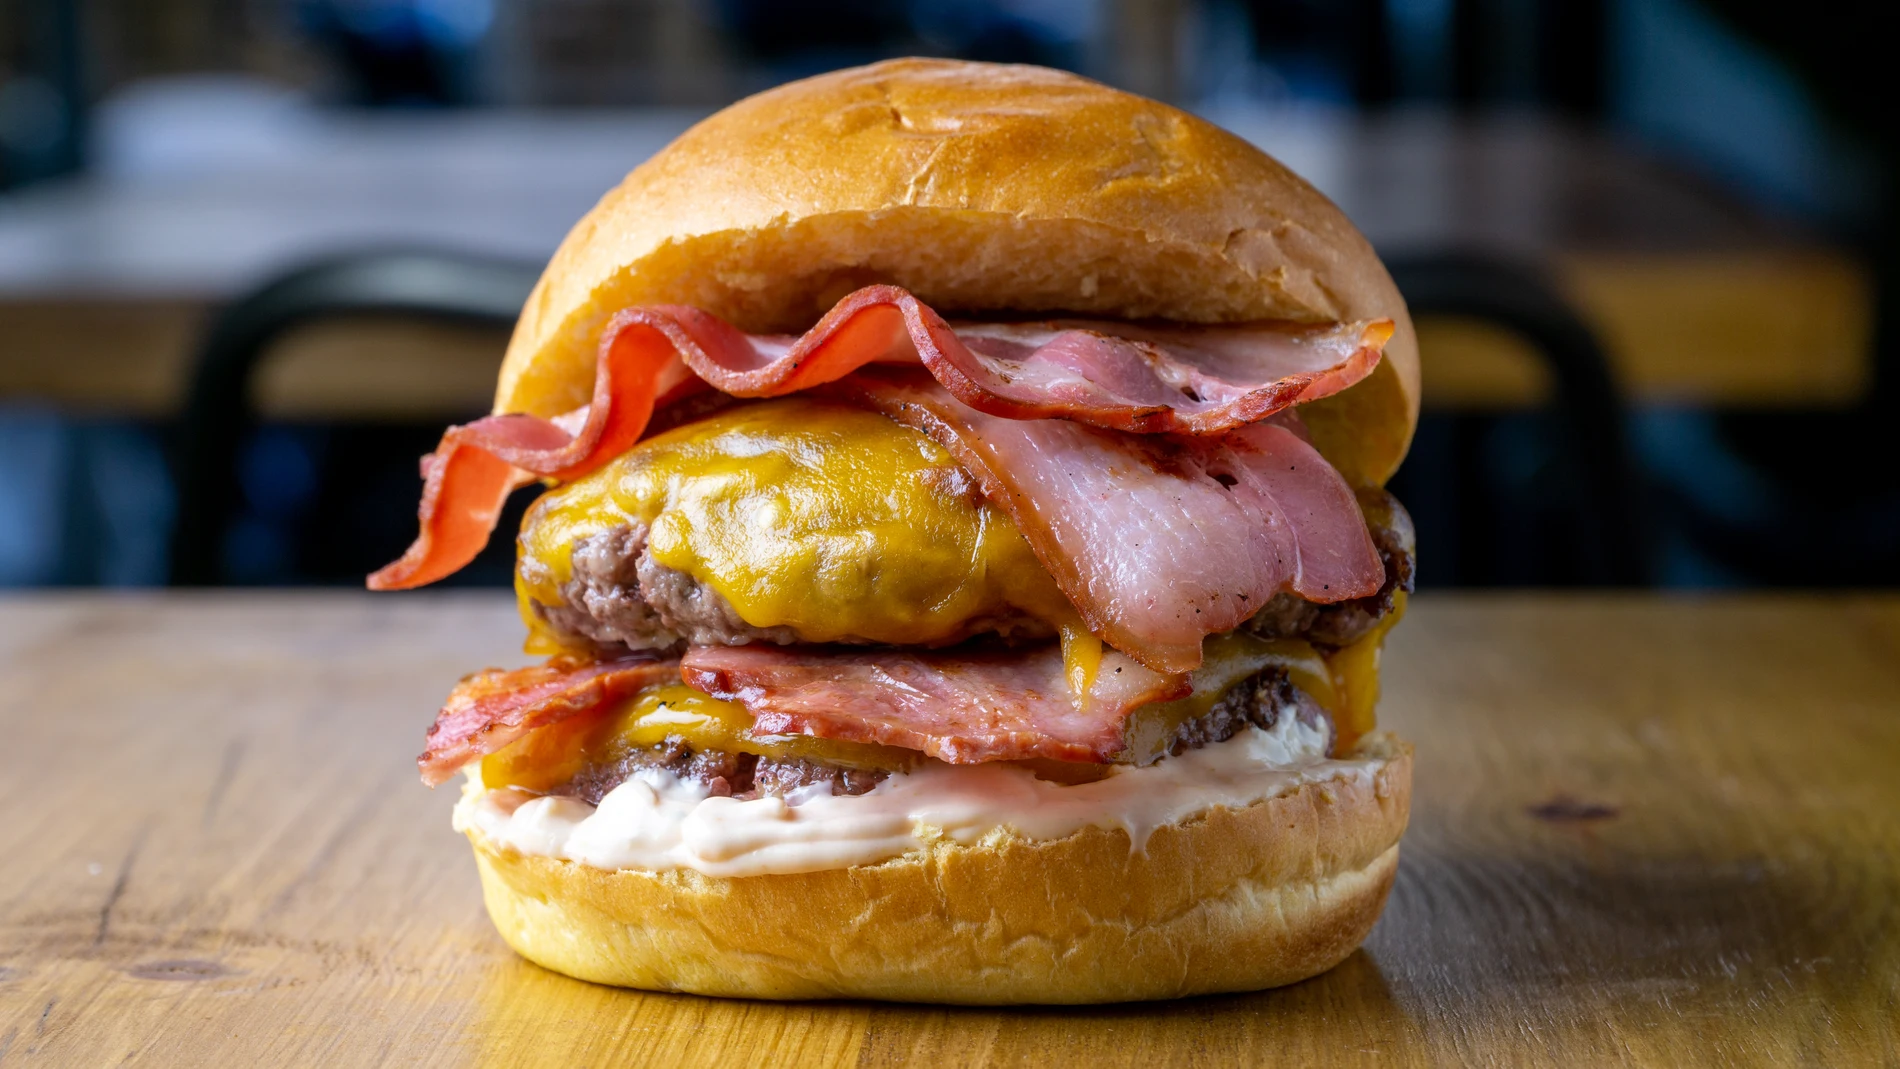 La Frankie Cheese Bacon ha sido nombrada tercera mejor hamburguesa en el Campeonato de España de Hamburguesas